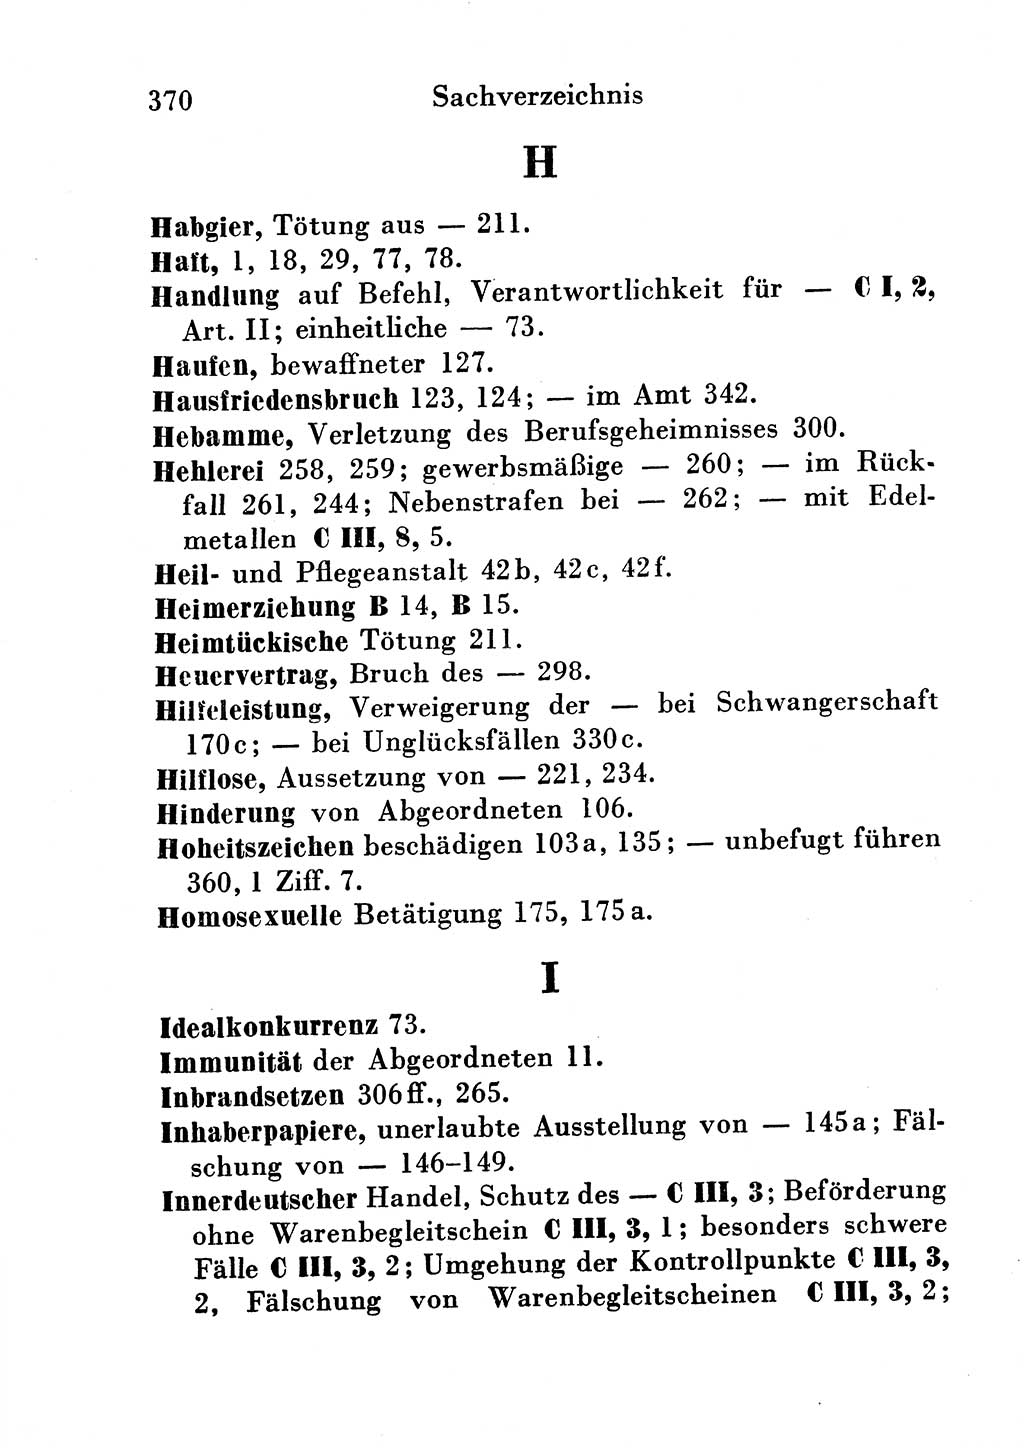 Strafgesetzbuch (StGB) und andere Strafgesetze [Deutsche Demokratische Republik (DDR)] 1954, Seite 370 (StGB Strafges. DDR 1954, S. 370)